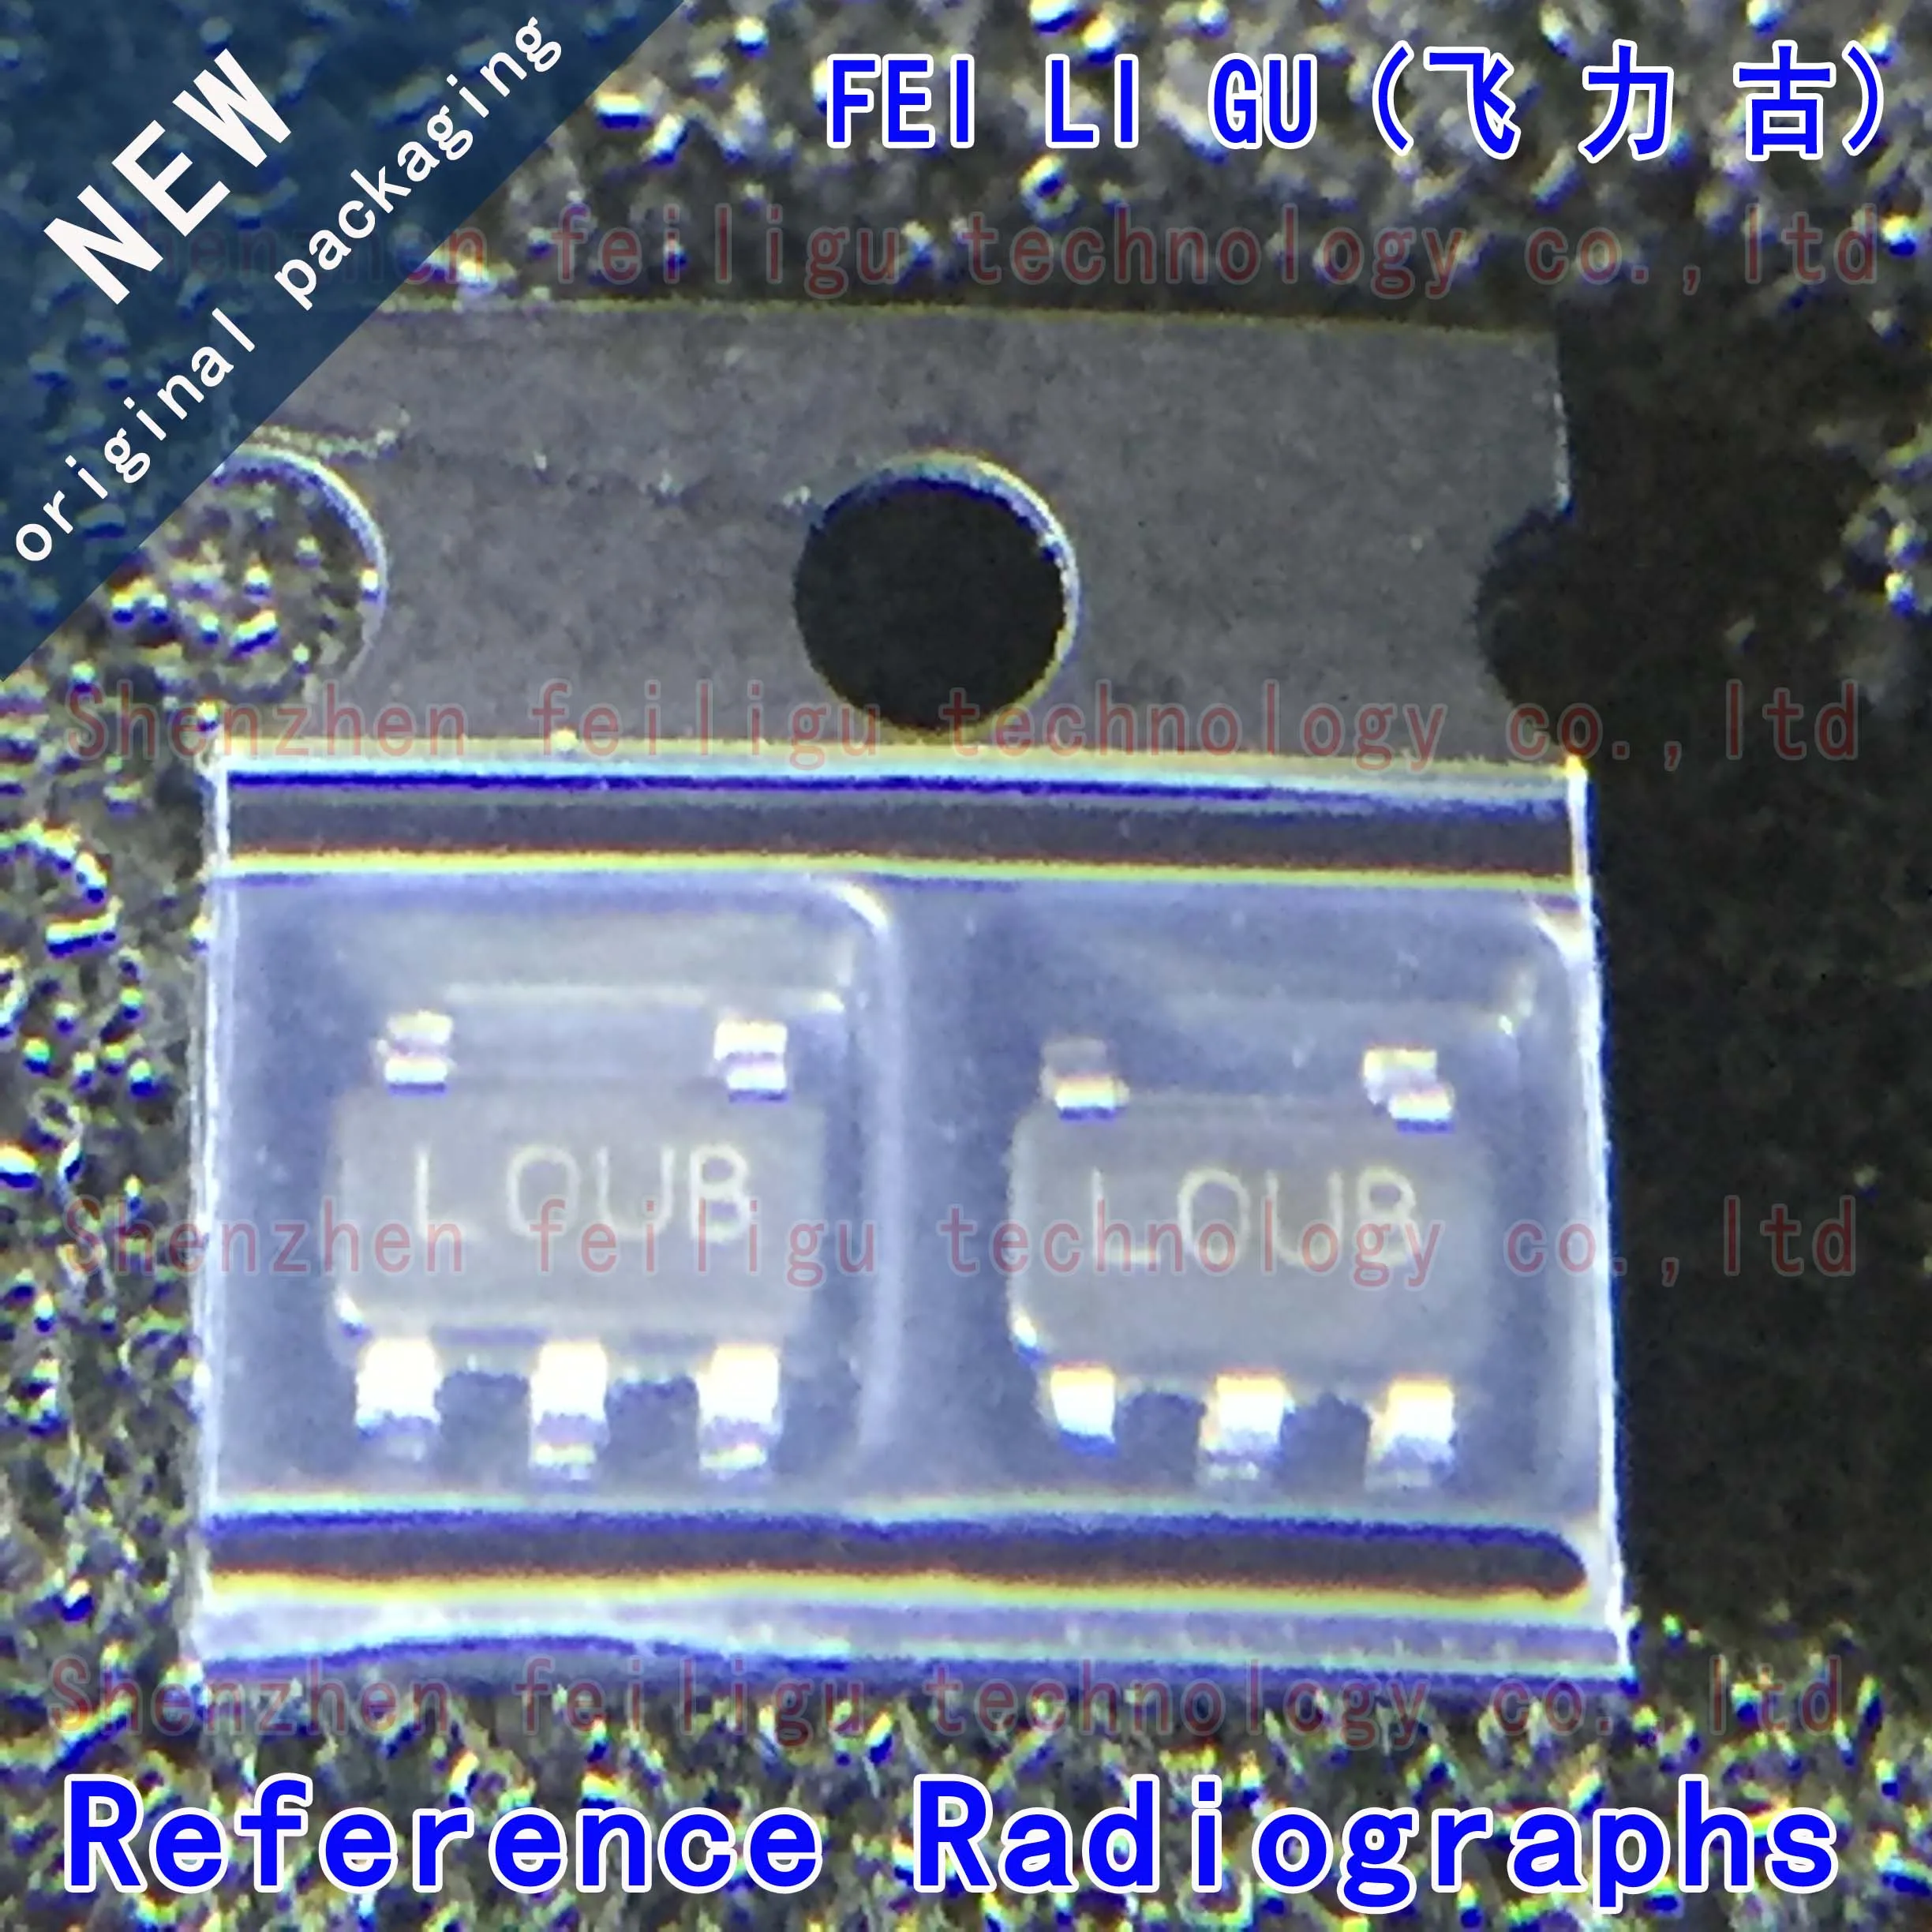 New original LP2985IM5X-5.0/NOPB LP2985IM5X-5.0 LP2985IM5-5.0 LP2985 silkscreen: LOUB package: SOT23-5 linear regulator chip tps62120dcnr tps62120 smd silkscreen qtx sot23 8 voltage regulator chip 100% brand new genuine free shipping electronics